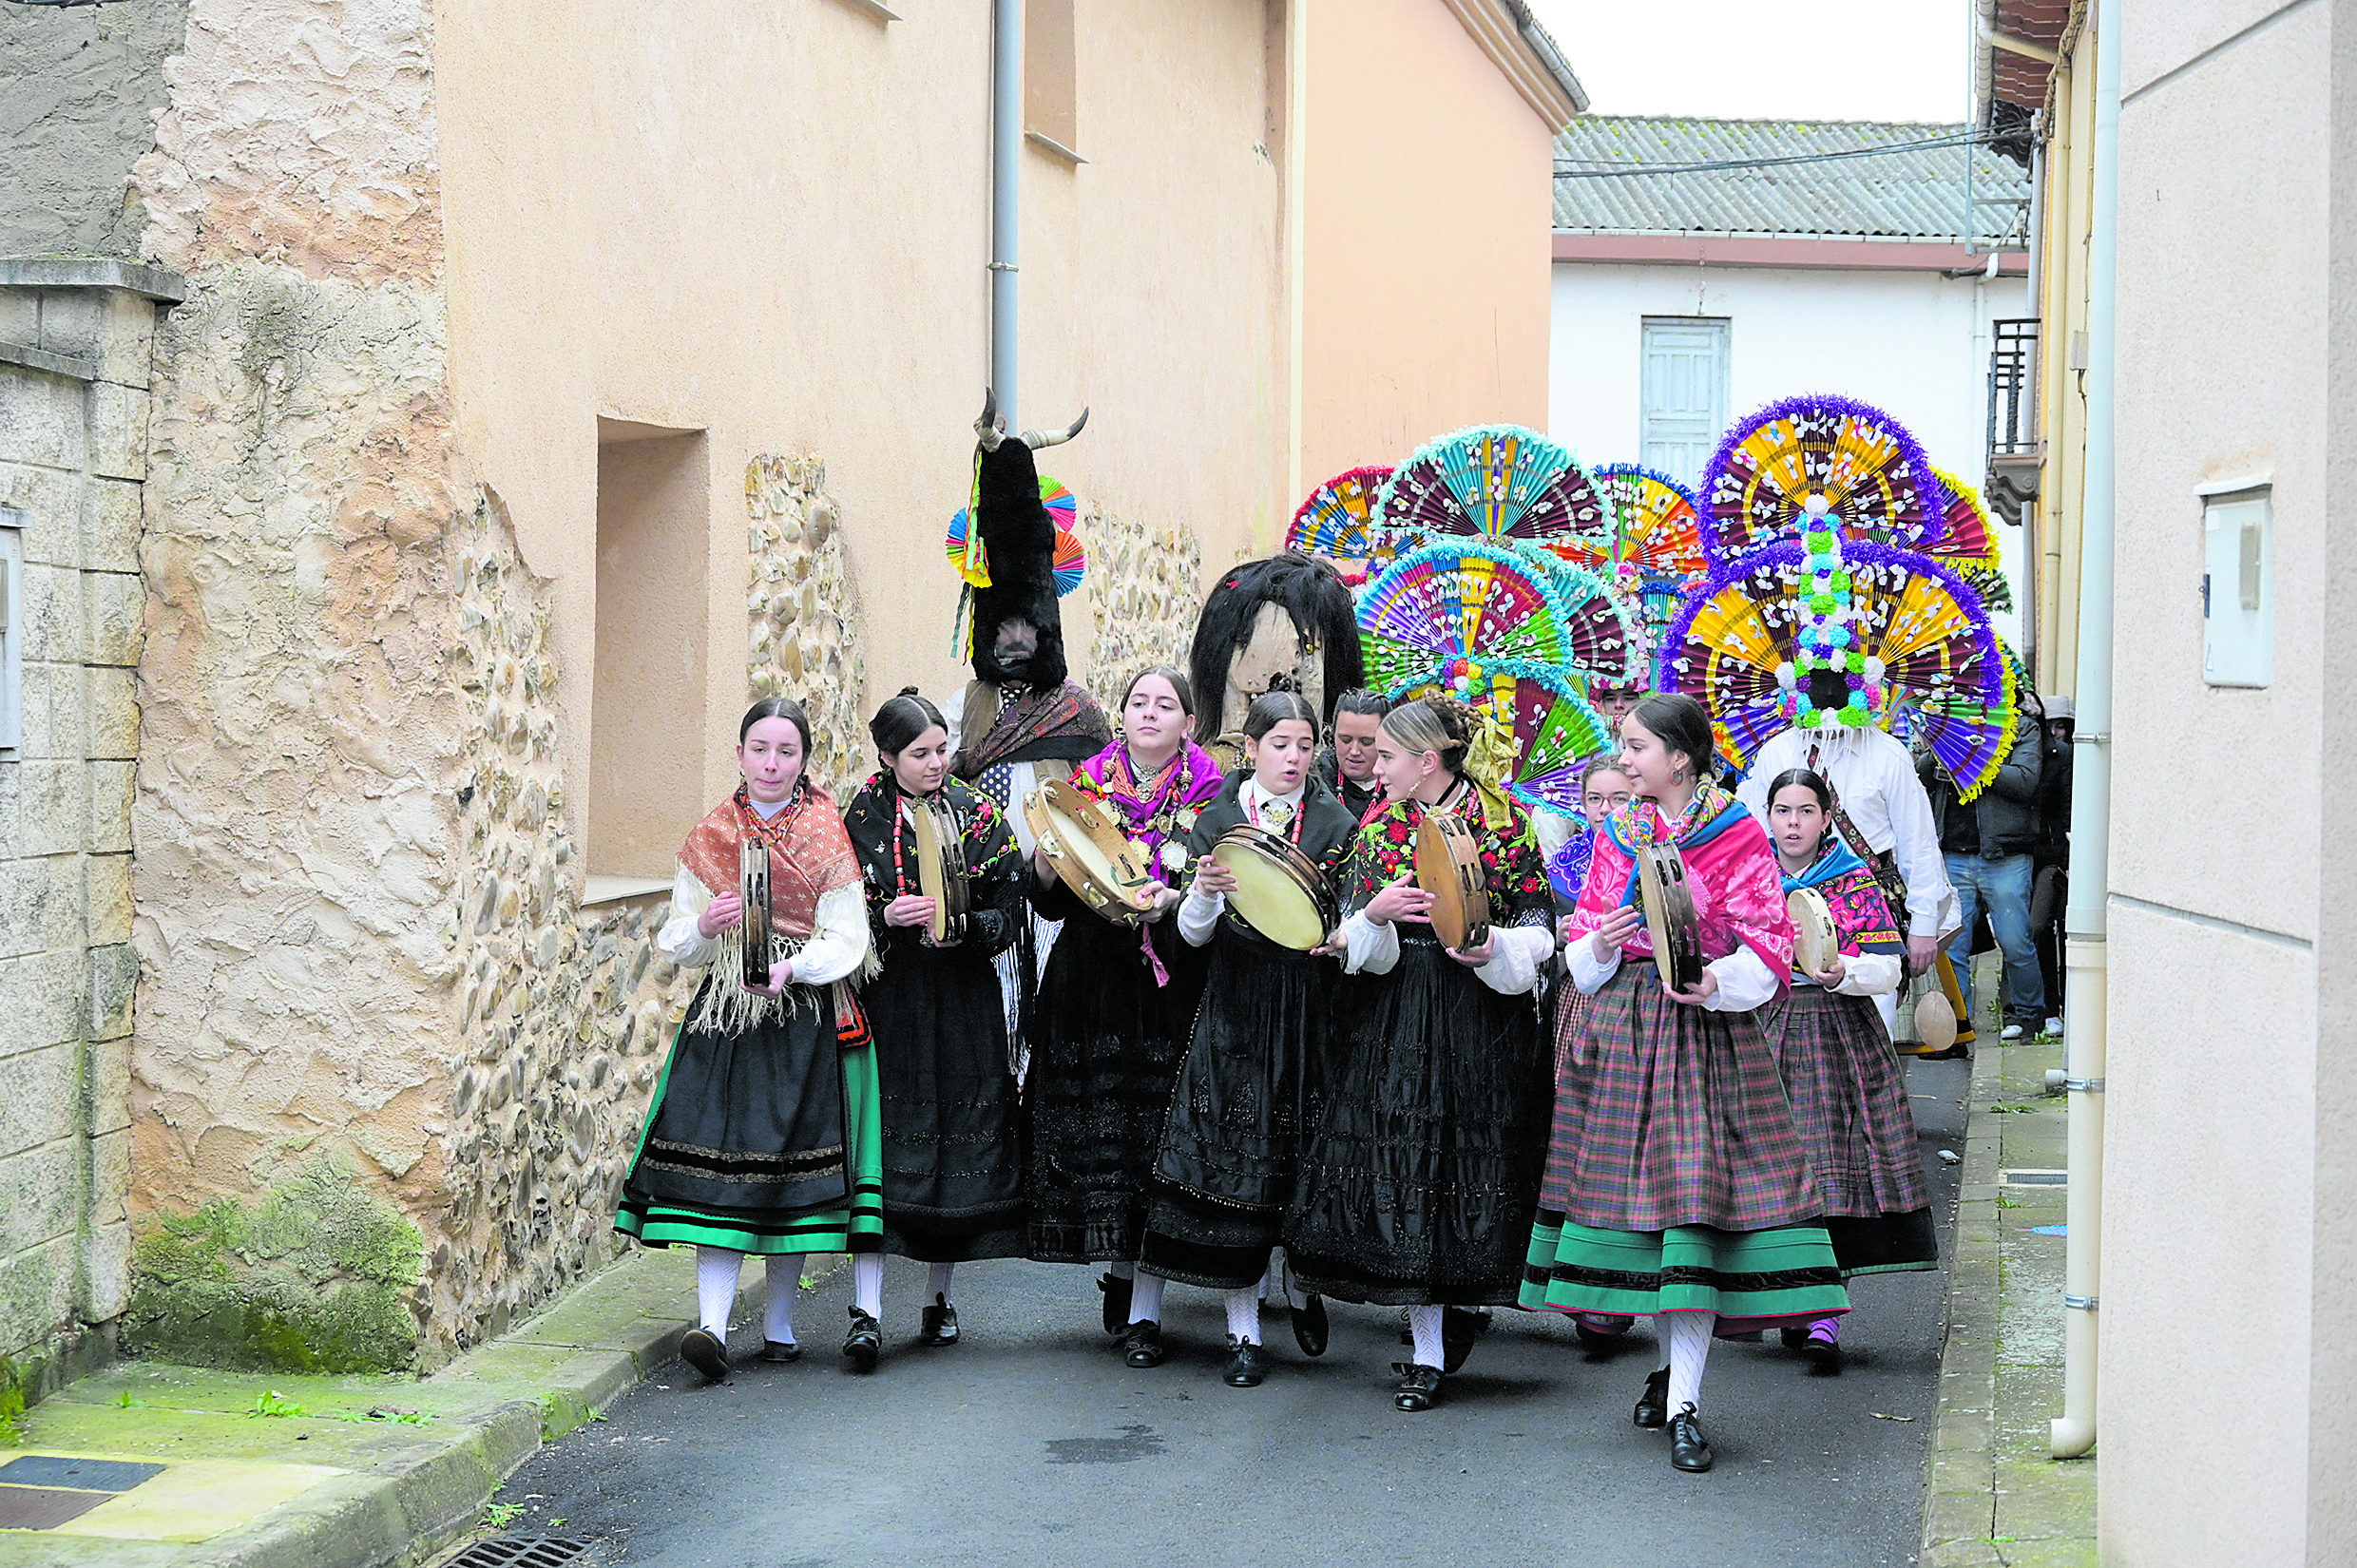 La celebración del Antruejo de Llamas de la Ribera se basa cada año en numerosos ritos y costumbres arcaicas. | MAURICIO PEÑA